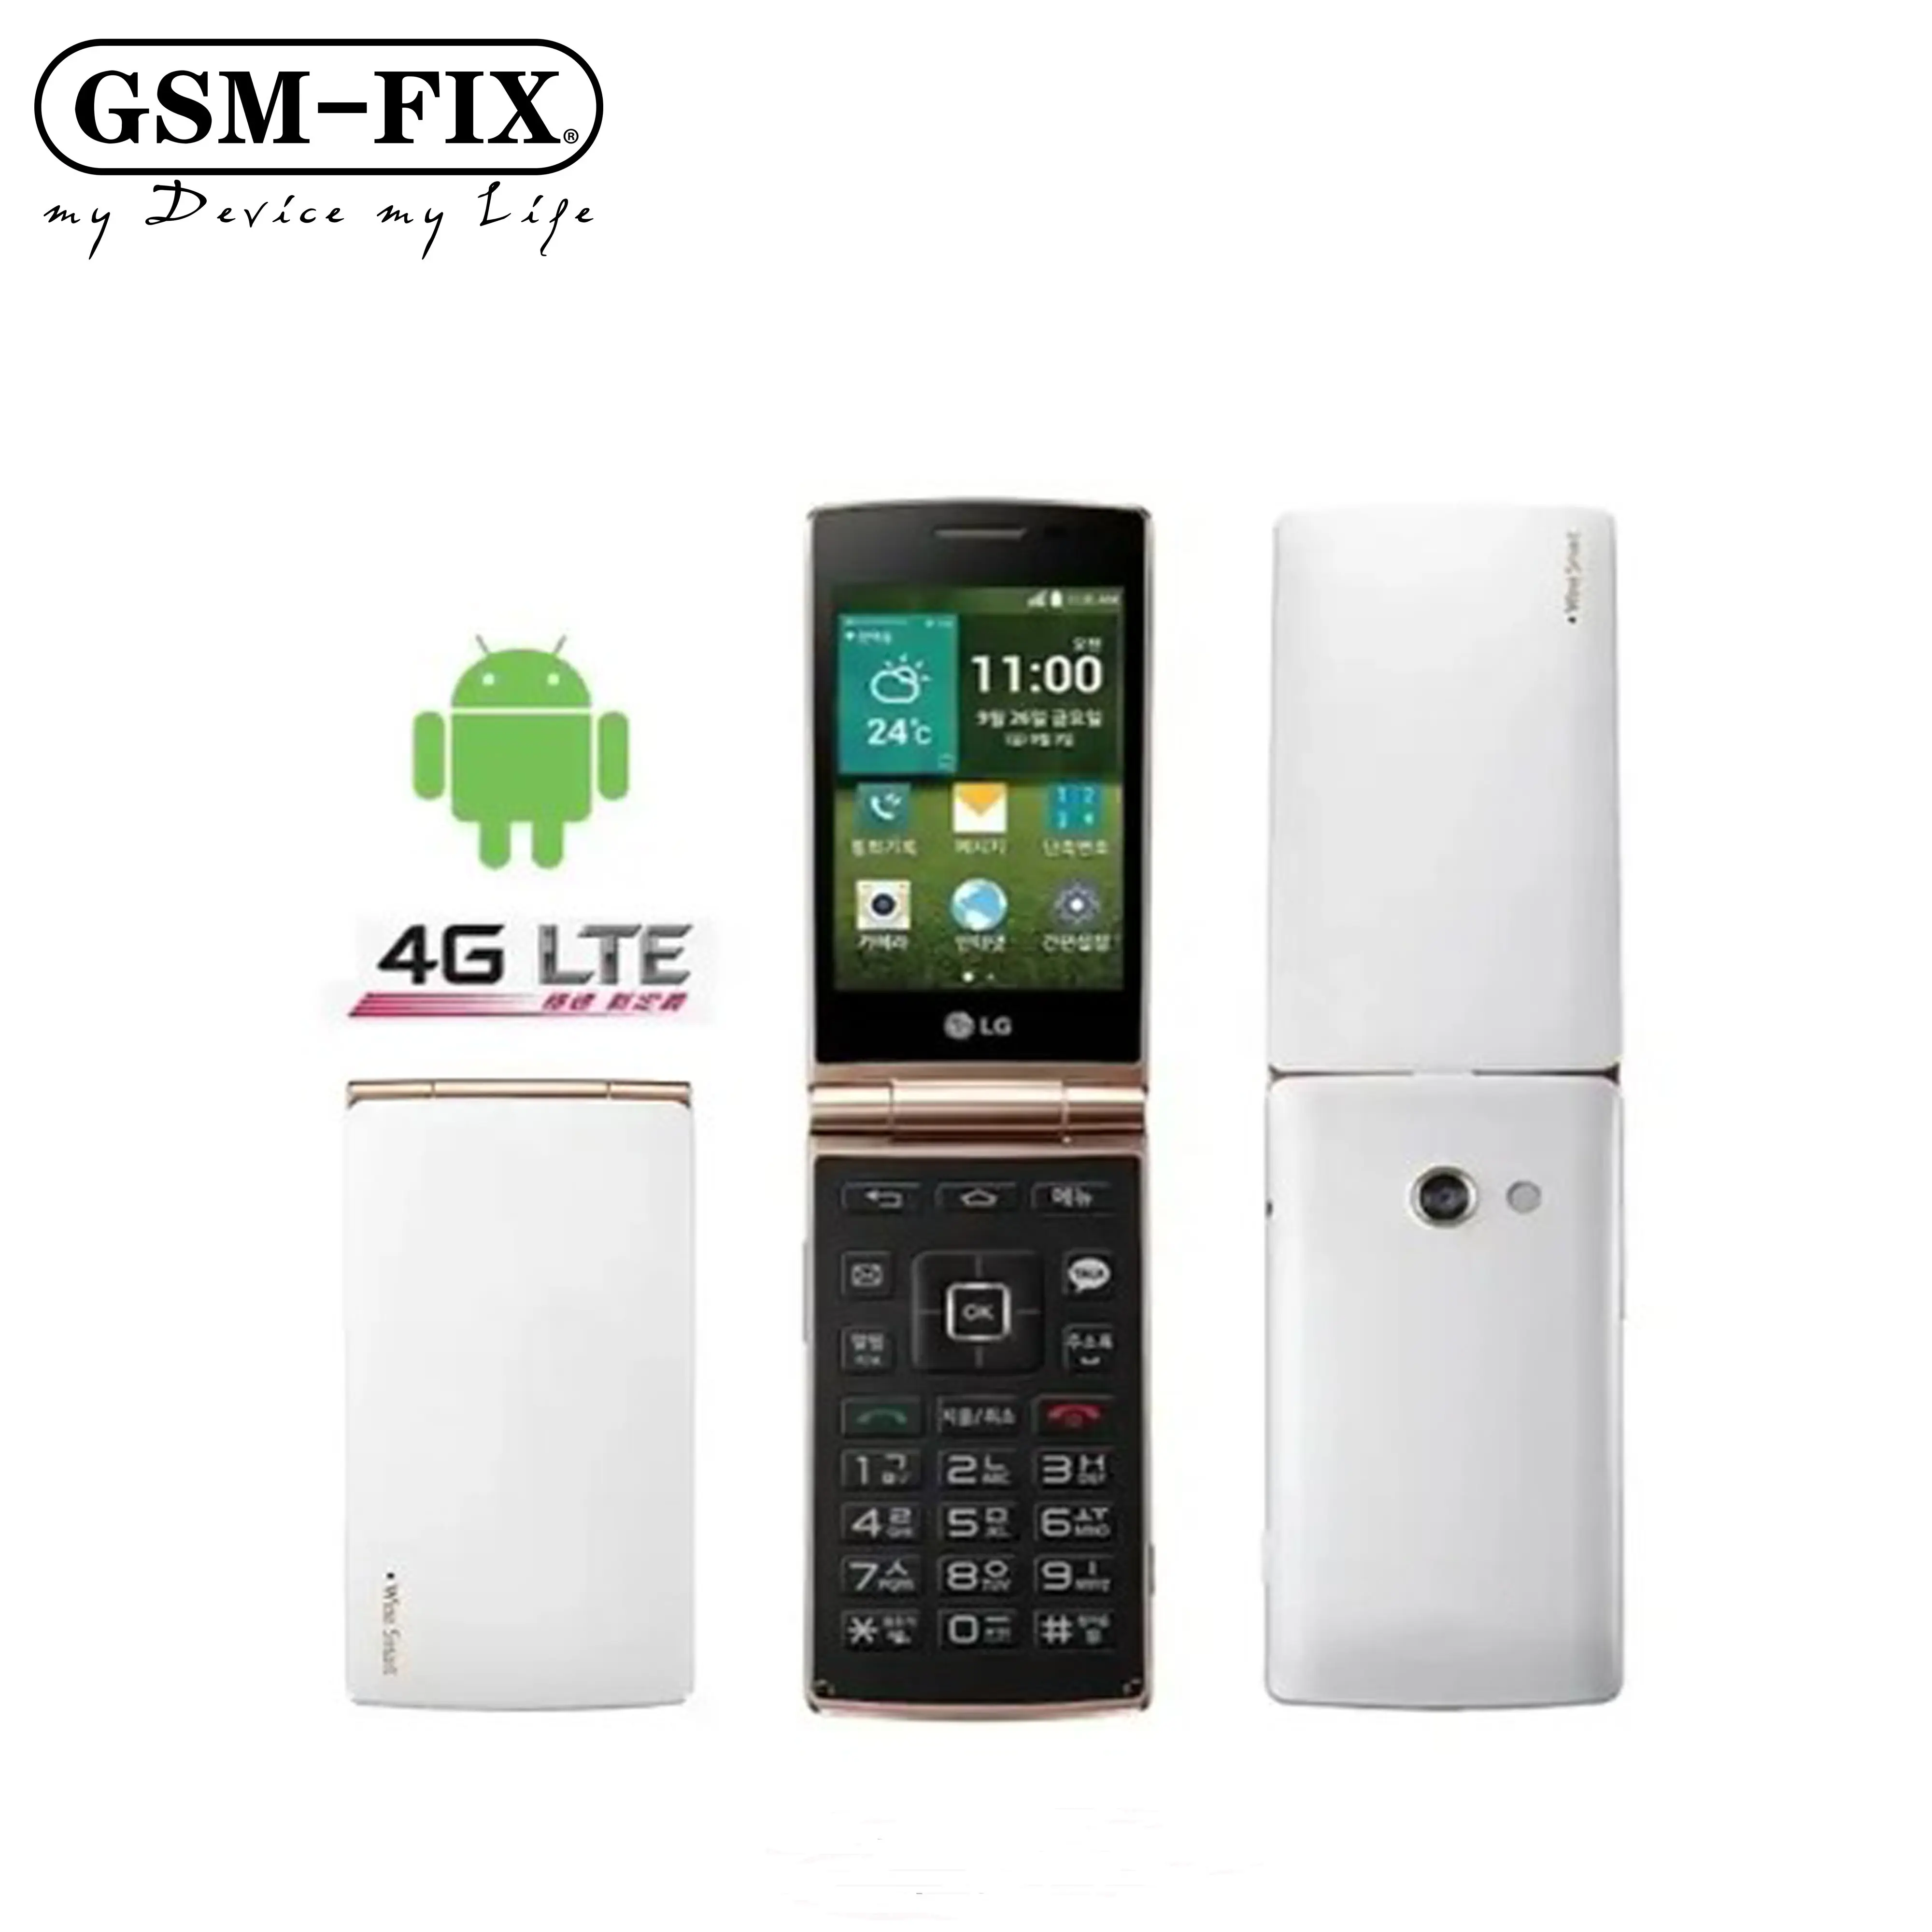 GSM-FIX ओरिजिनल LG वाइन स्मार्ट D486 4G मोबाइल फोन 3.5'' 1GB रैम 4GB ROM 3MP सपोर्ट हिब्रू लैंग्वेज क्वाड कोर क्लासिक फ्लिप सेल